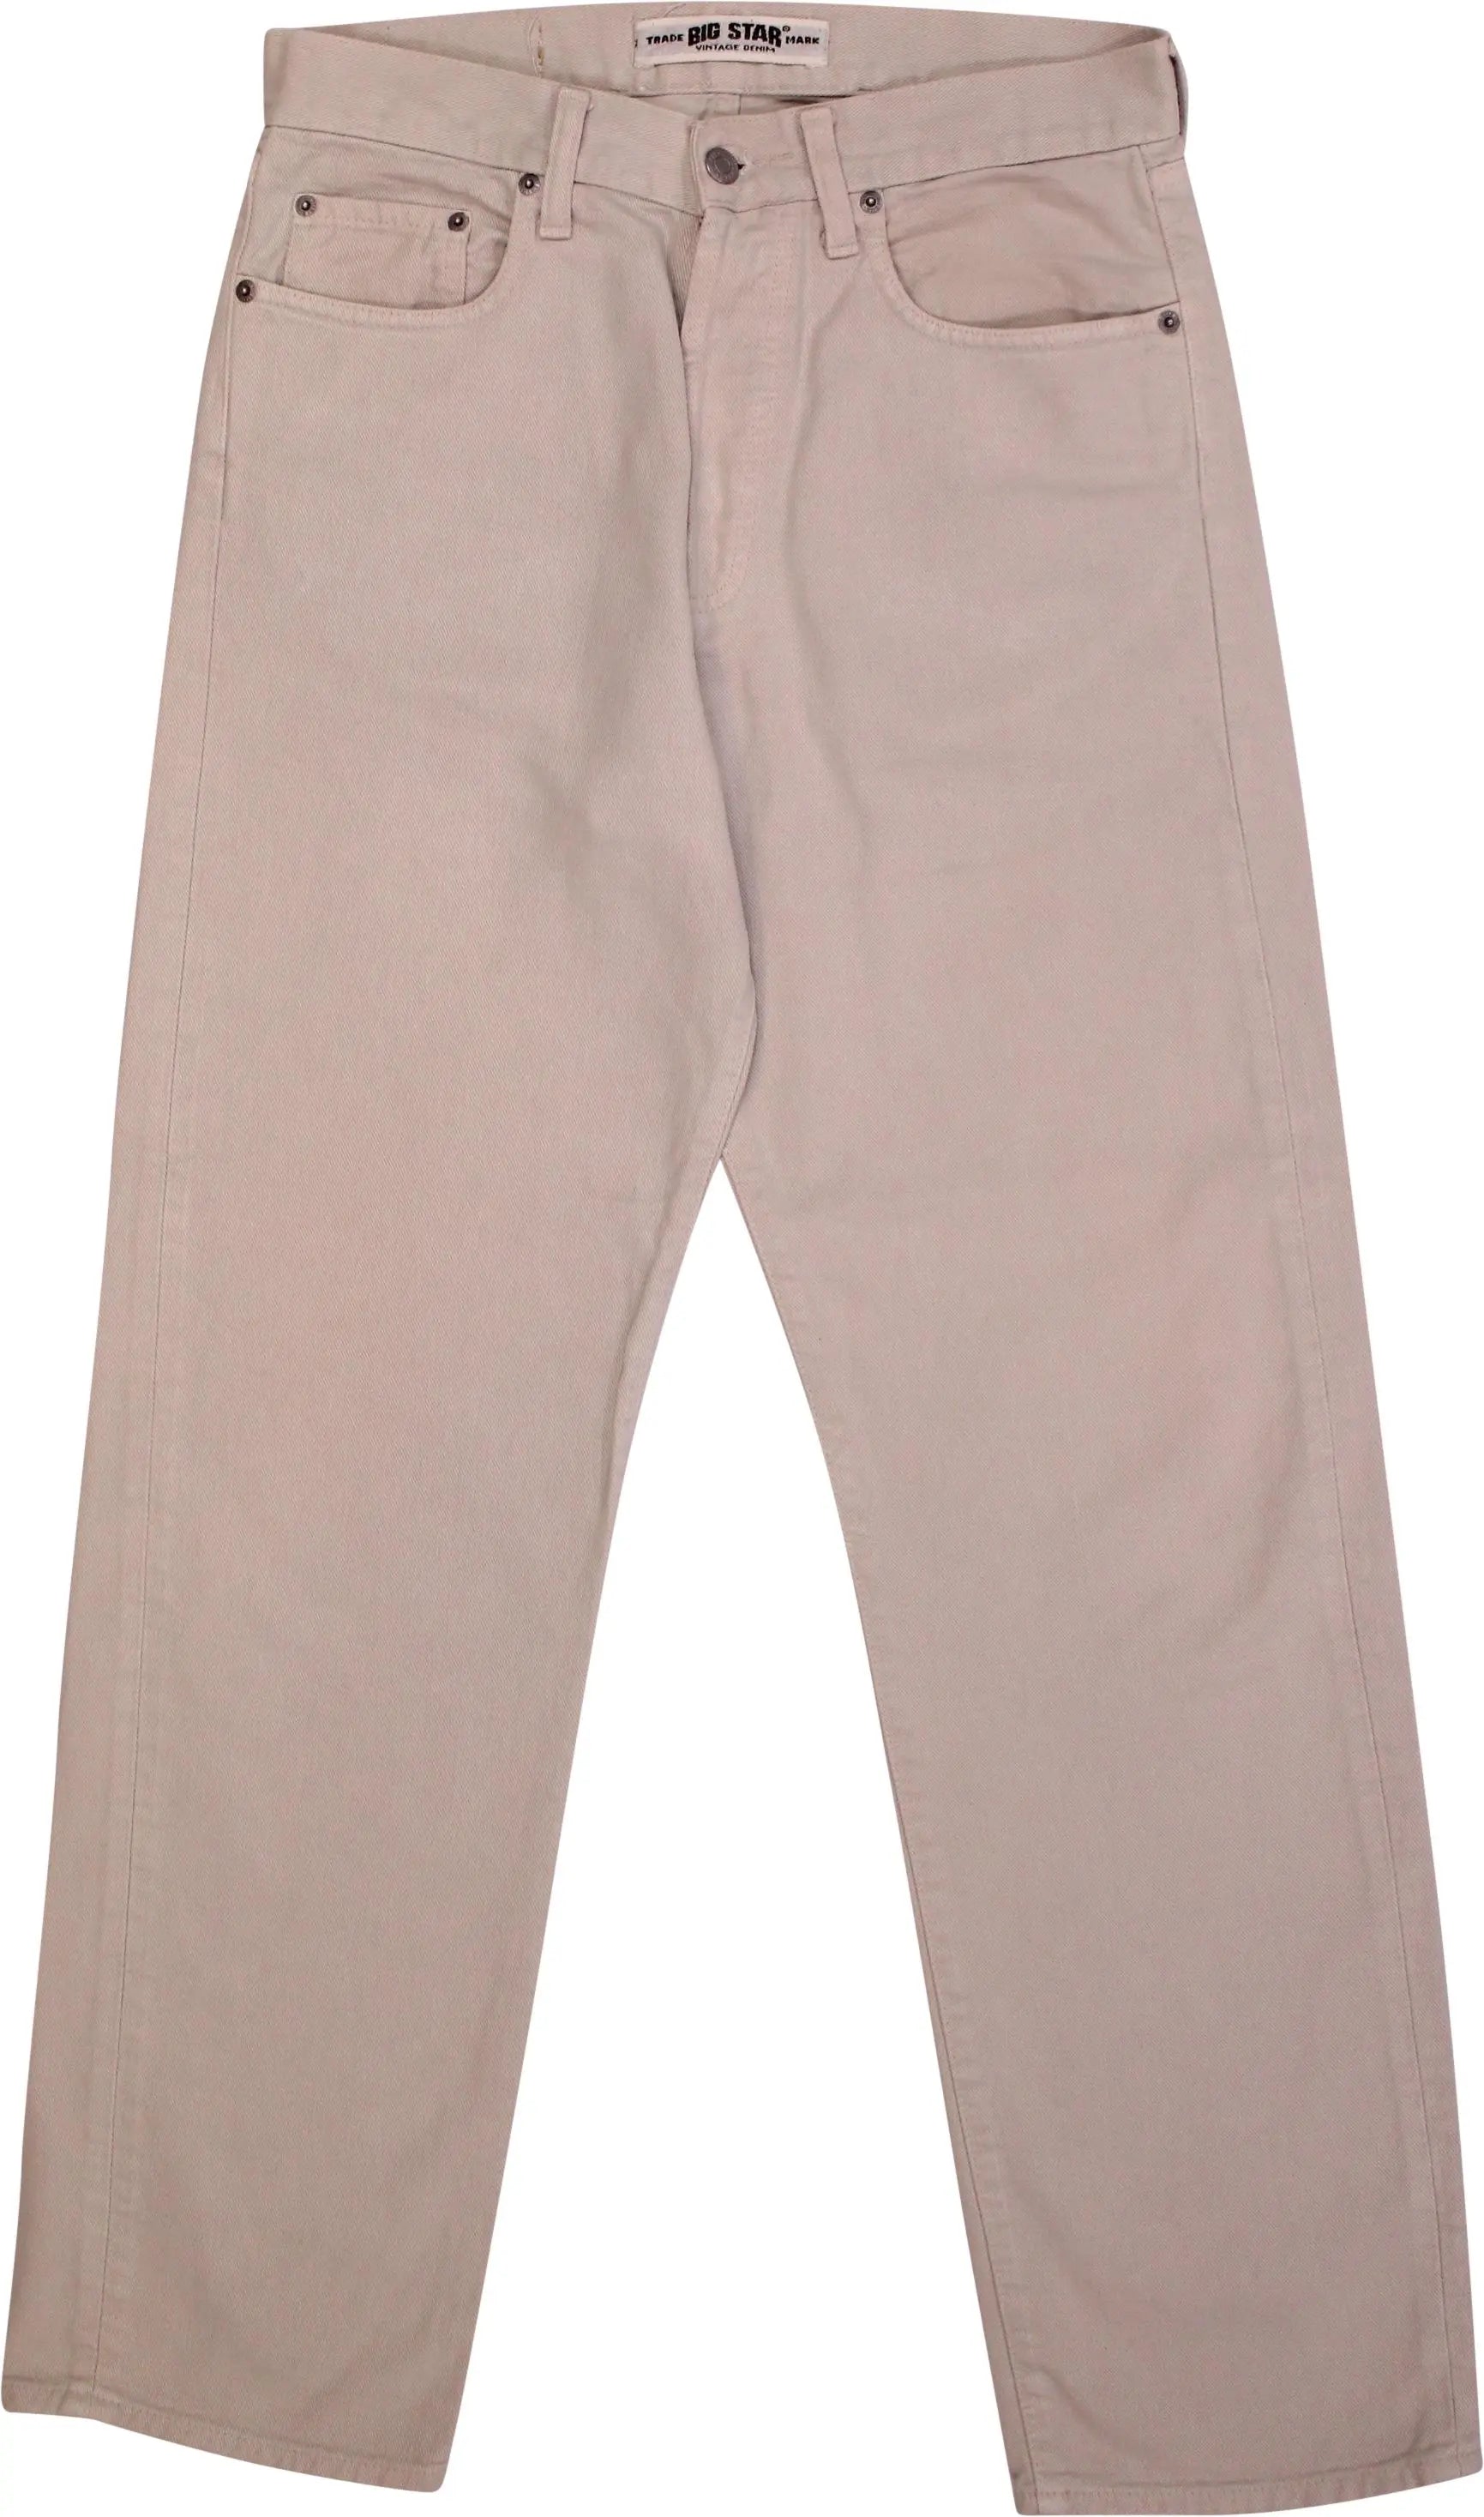 Big Star - Beige Regular Jeans- ThriftTale.com - Vintage and second handclothing